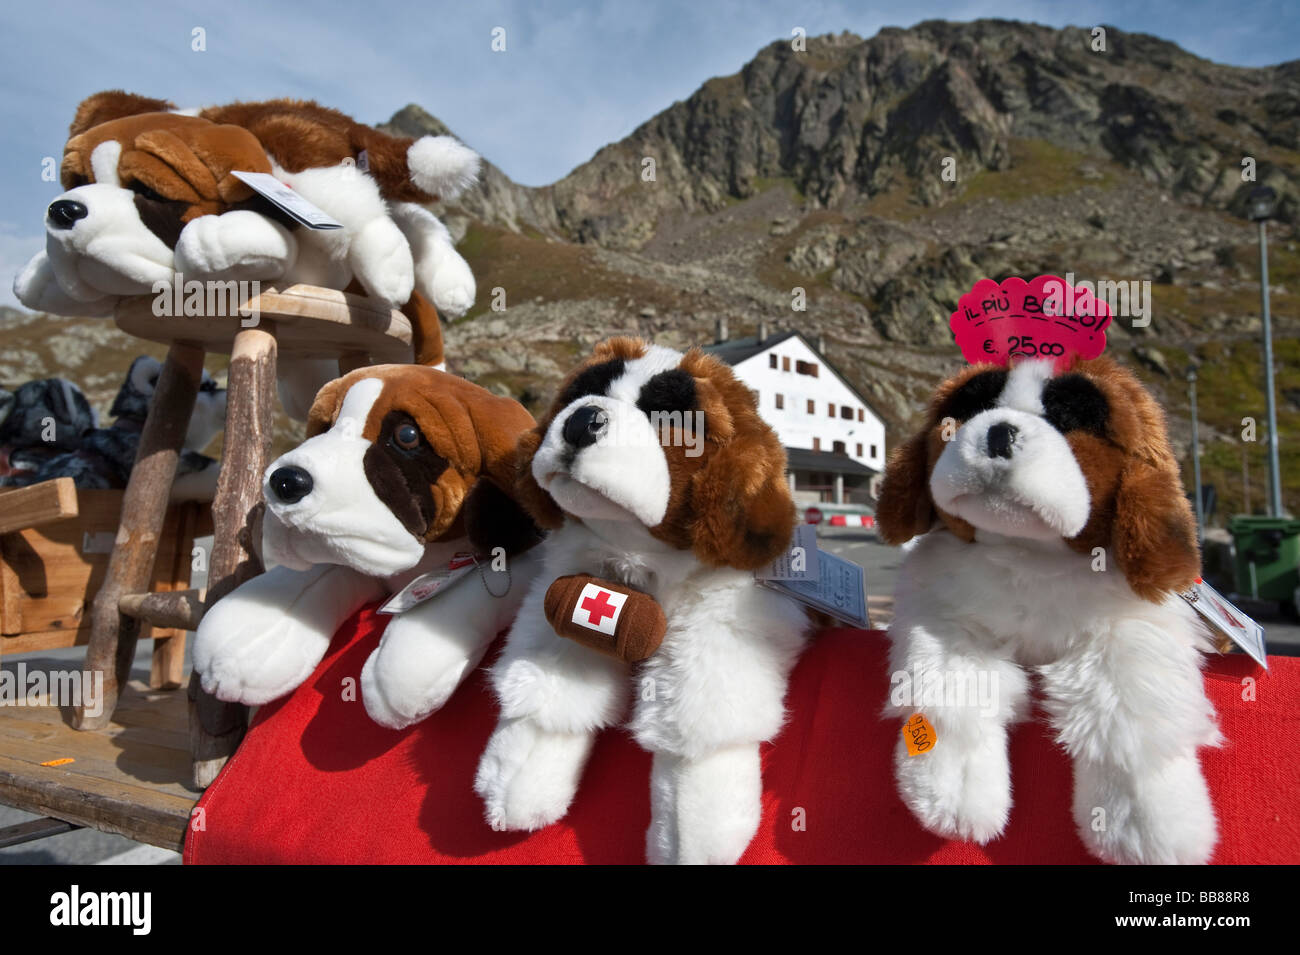 Stuffed Cuddly Dogs Stockfotos und -bilder Kaufen - Alamy